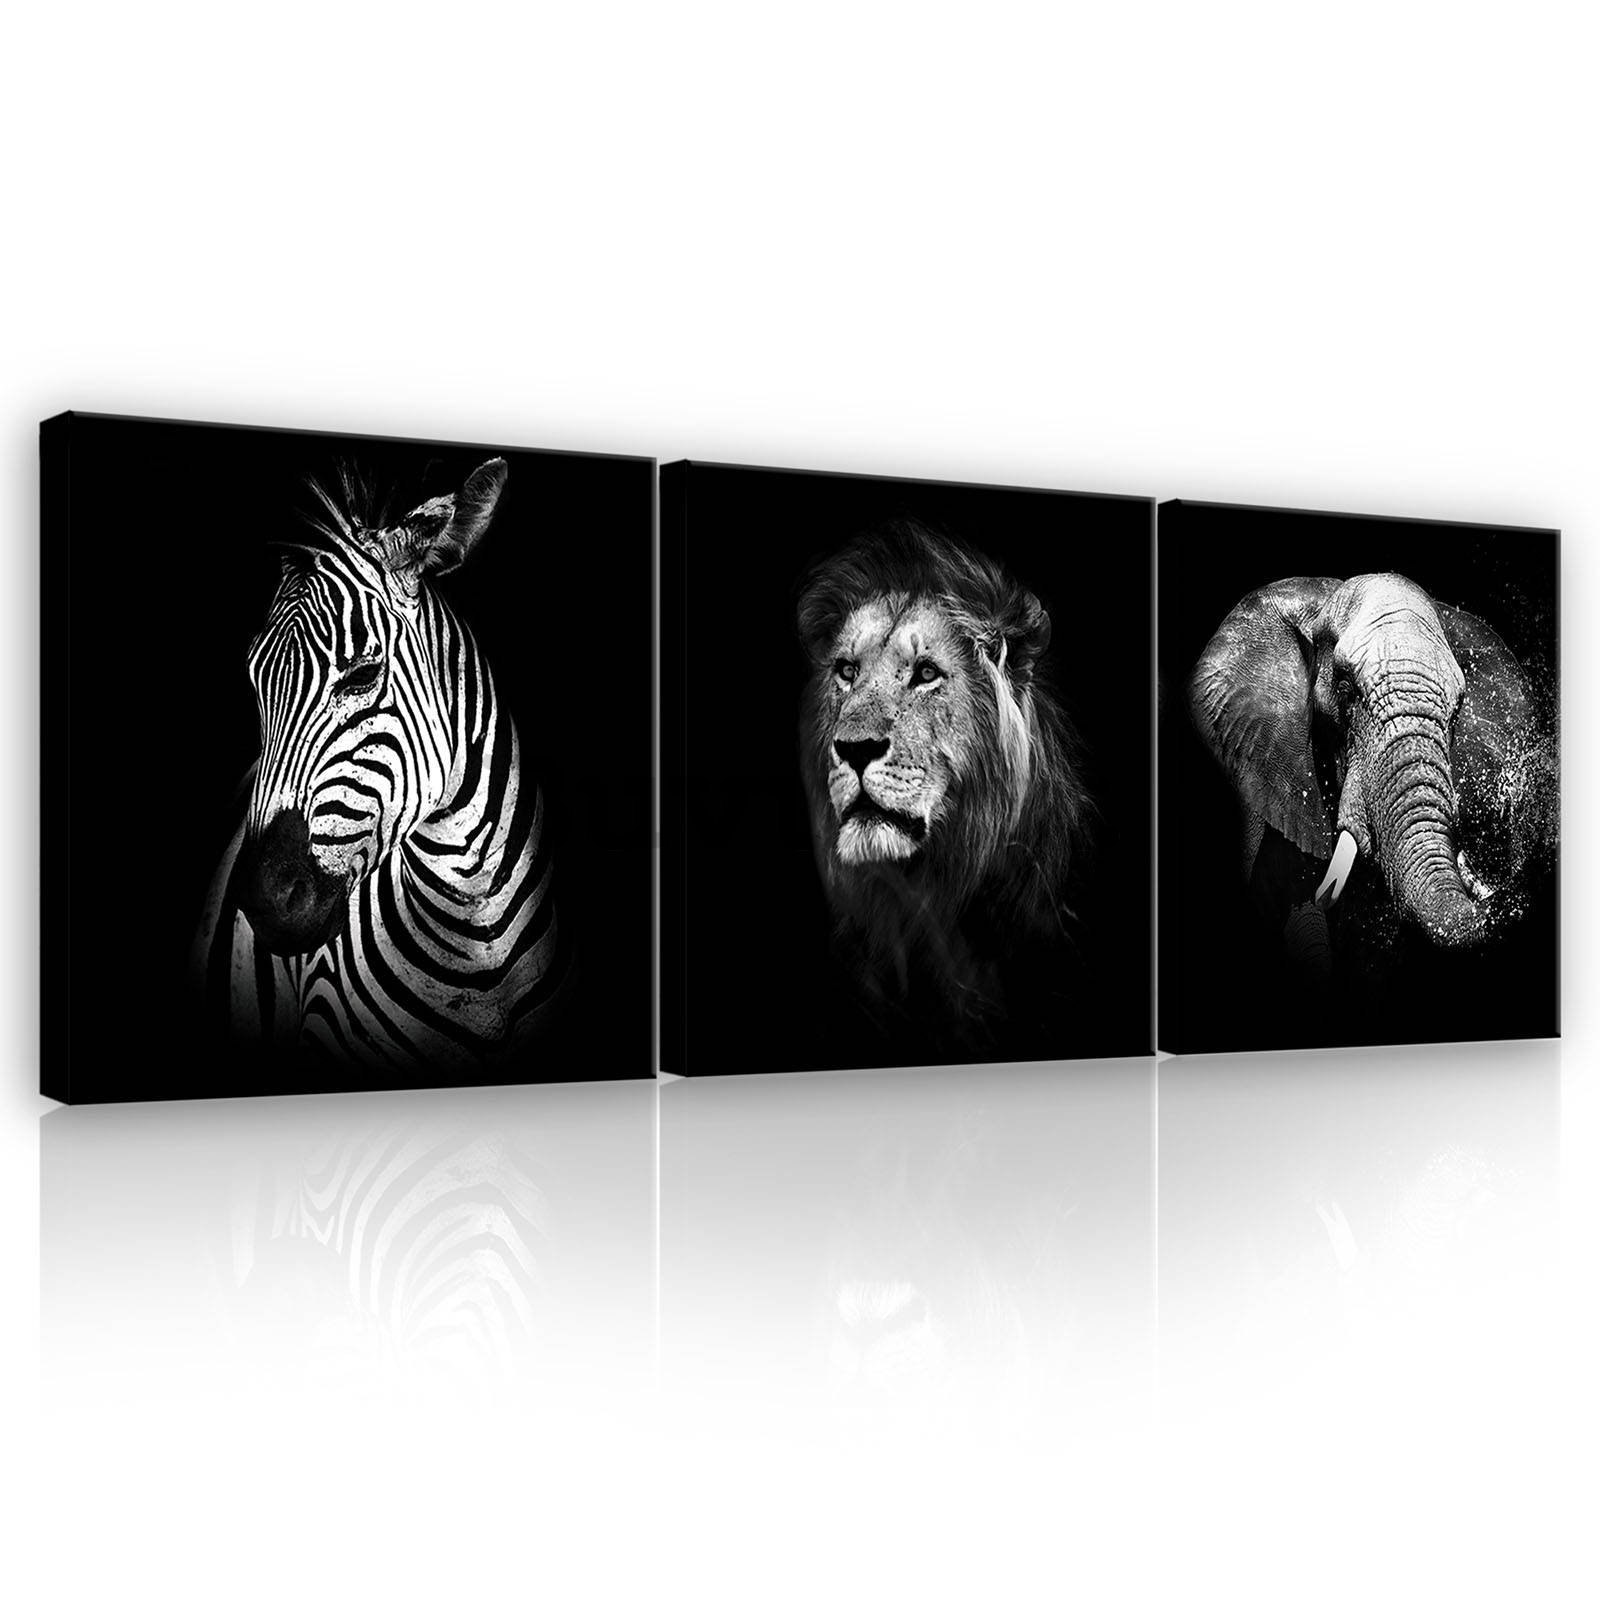 Quadro su tela: Animali in bianco e nero (1) - set 3pz 25x25cm